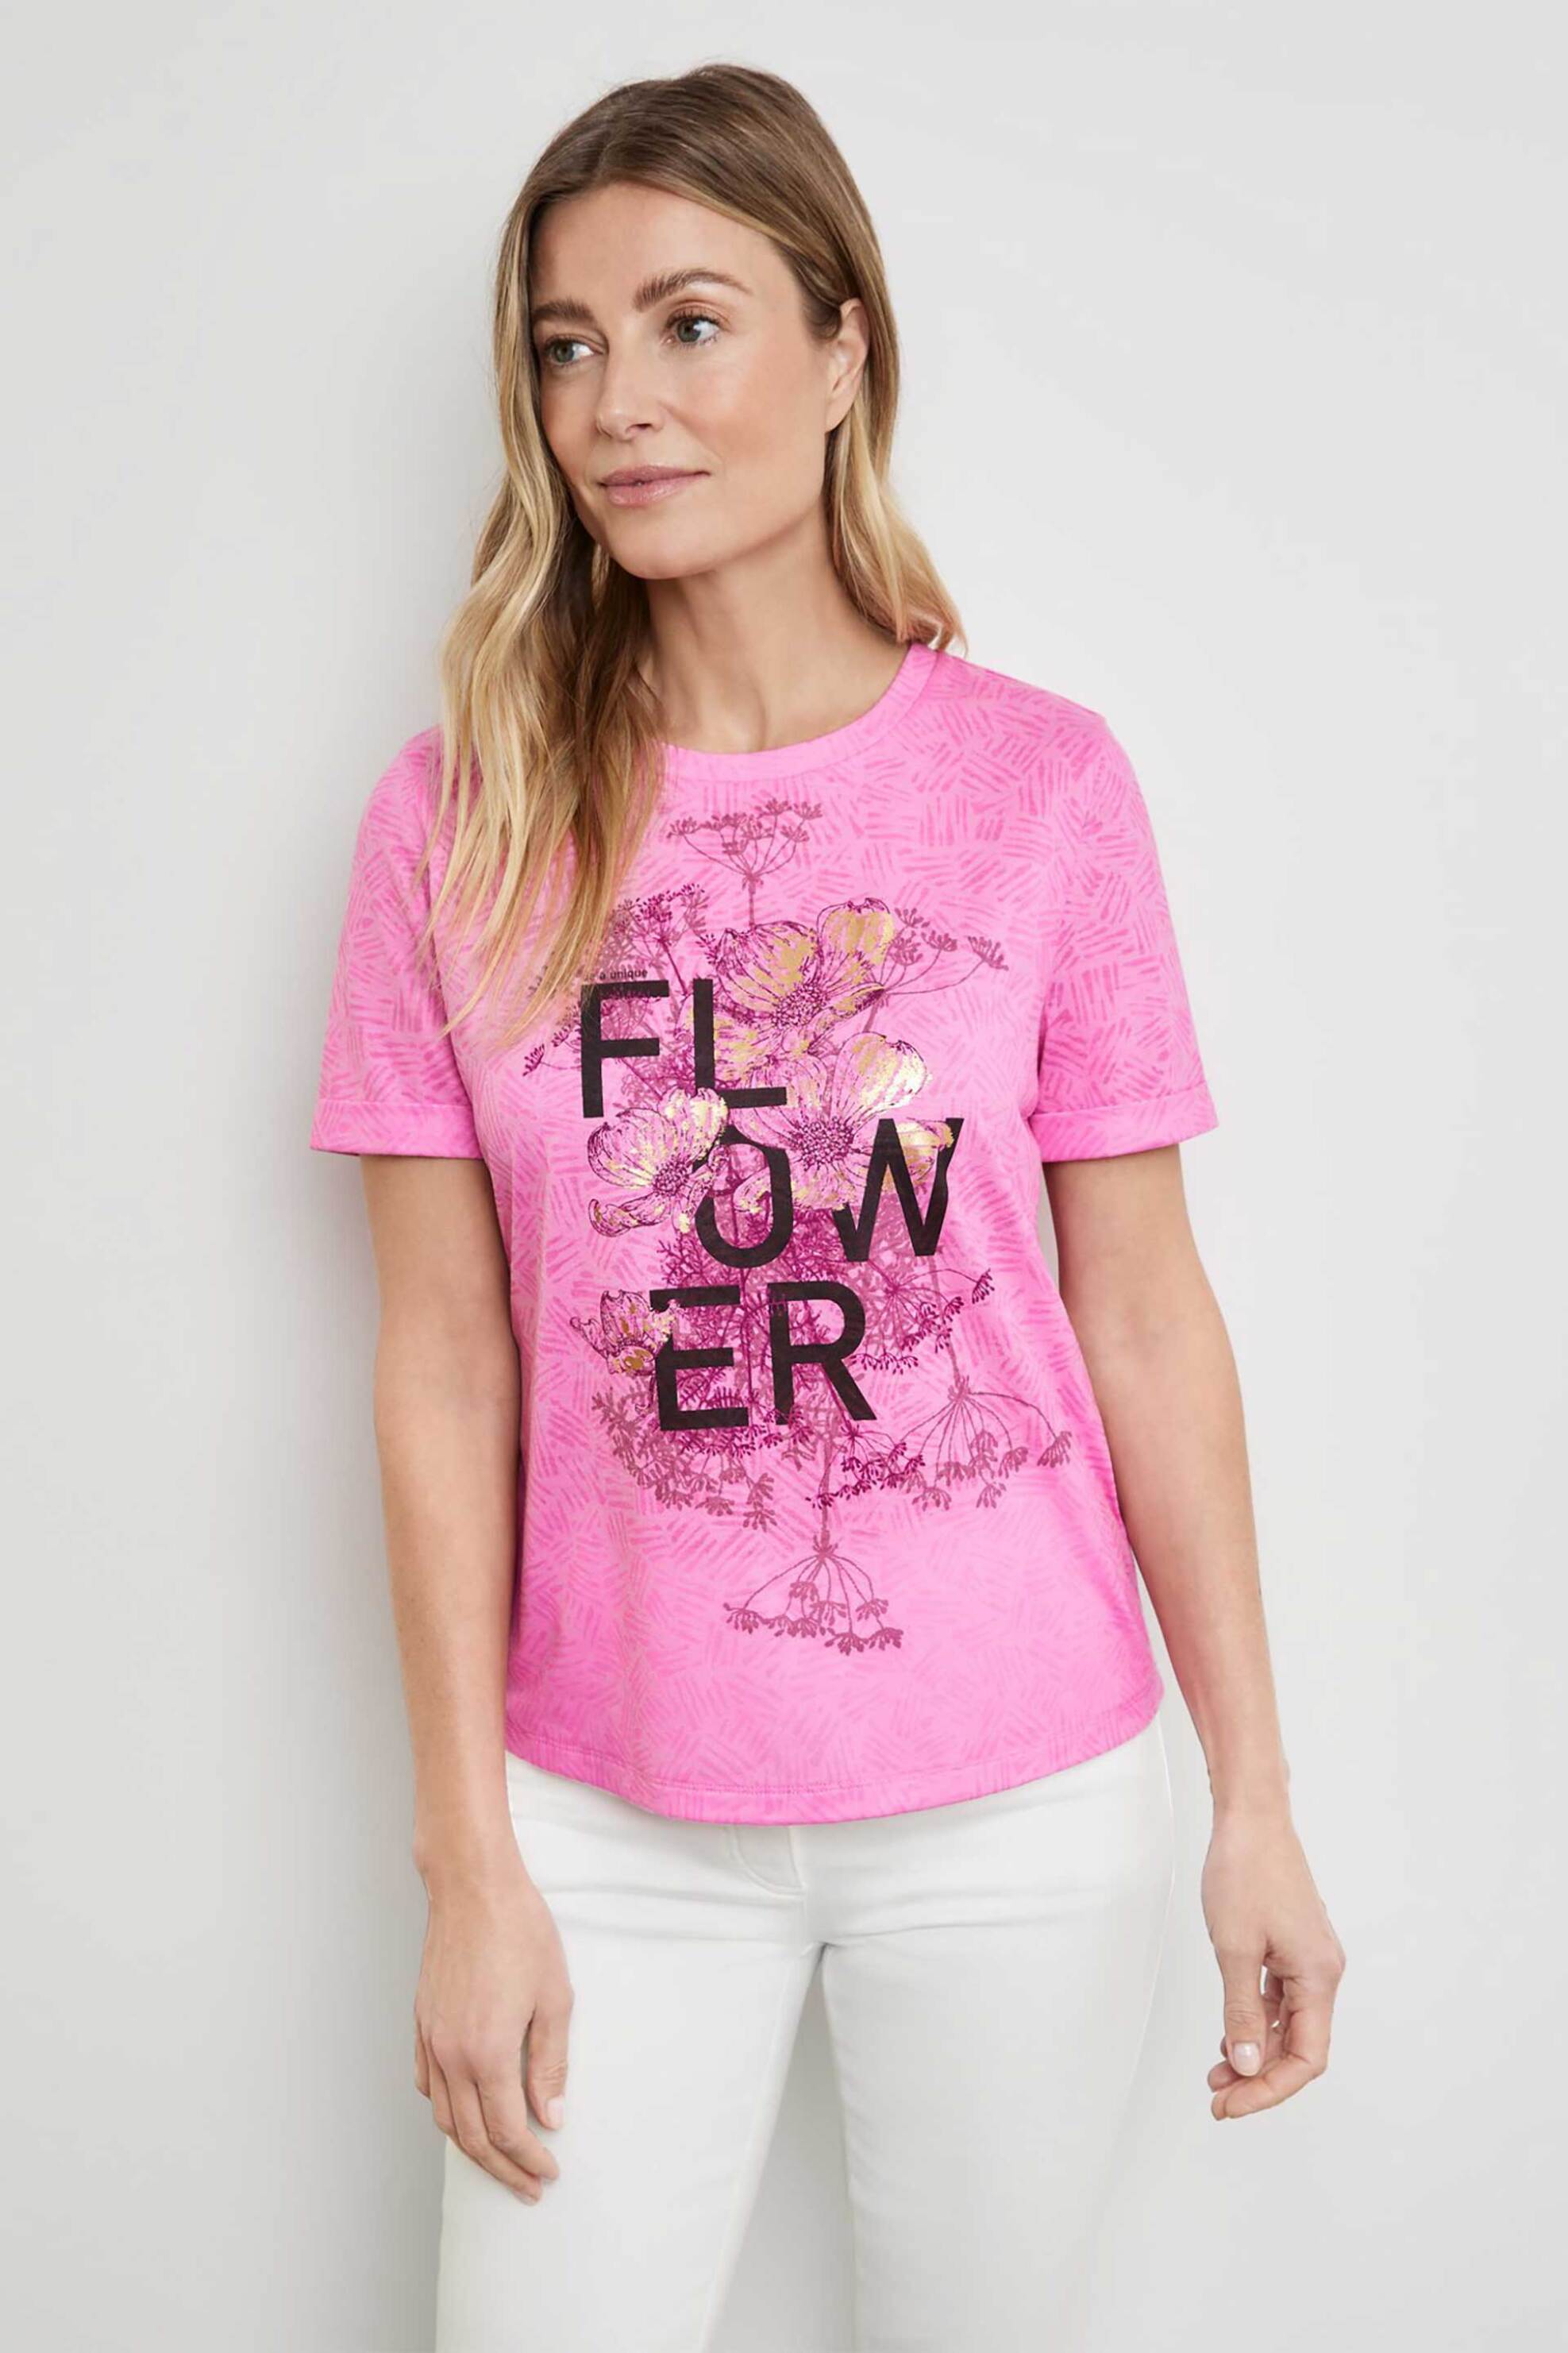 Γυναικεία Ρούχα & Αξεσουάρ > Γυναικεία Ρούχα > Γυναικεία Τοπ > Γυναικεία T-Shirts Gerry Weber γυναικείο T-shirt με floral print - 270041-44040 Ροζ